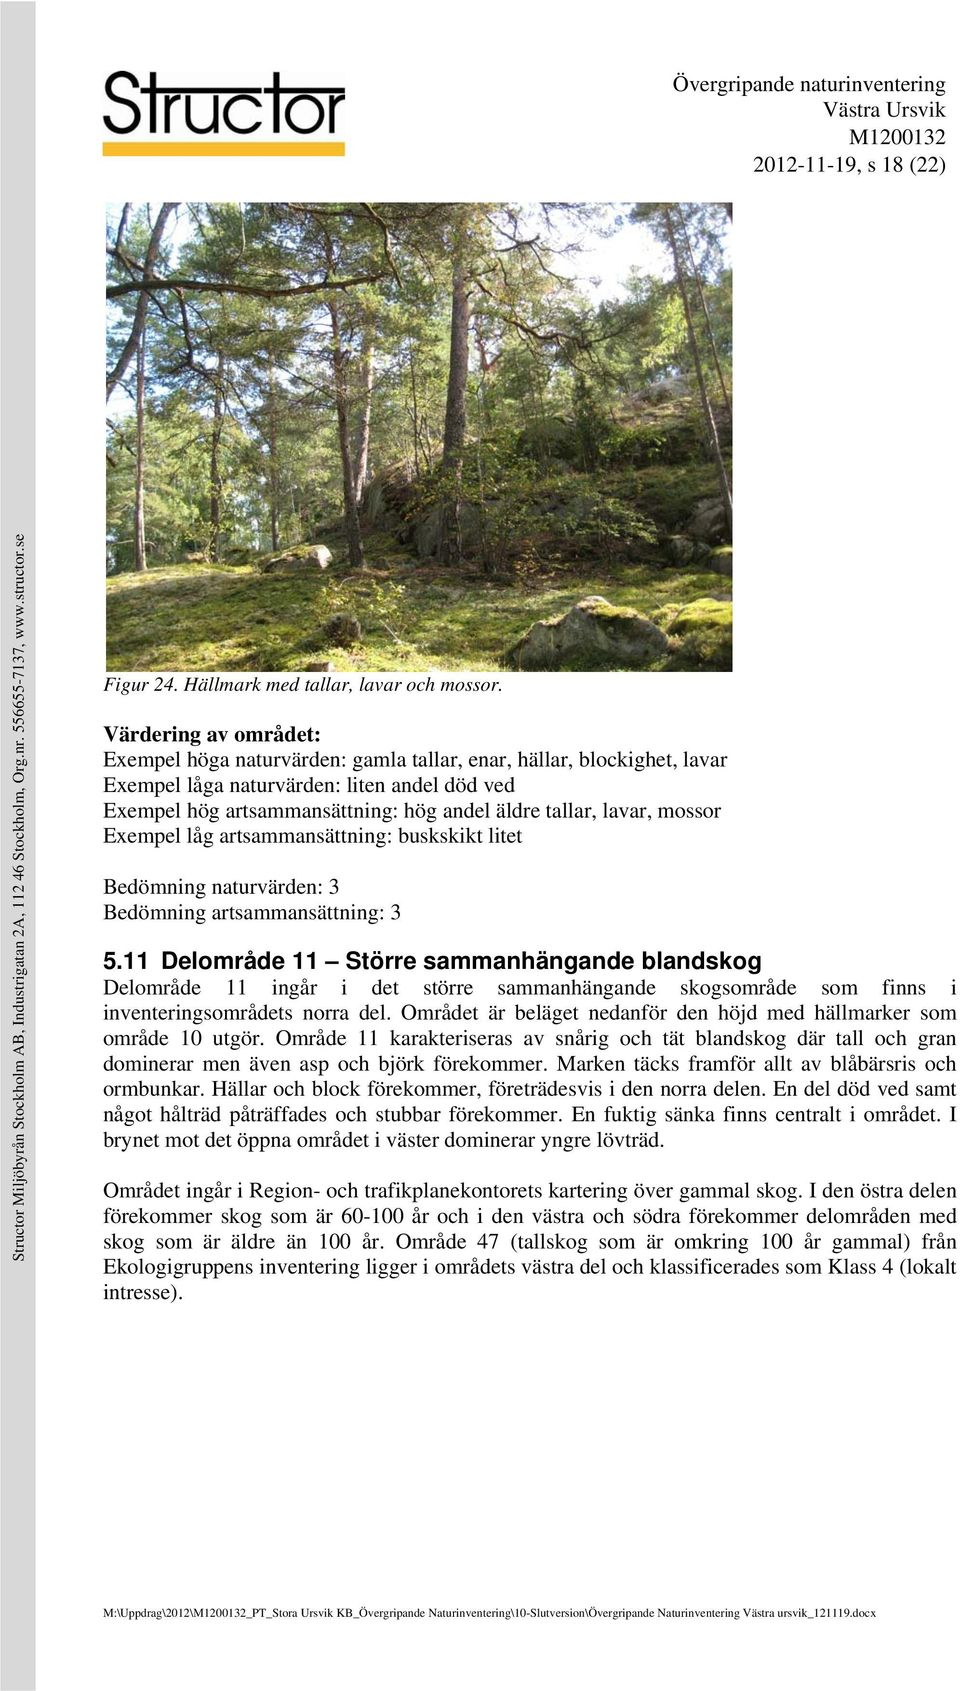 lavar, mossor Exempel låg artsammansättning: buskskikt litet Bedömning naturvärden: 3 Bedömning artsammansättning: 3 5.